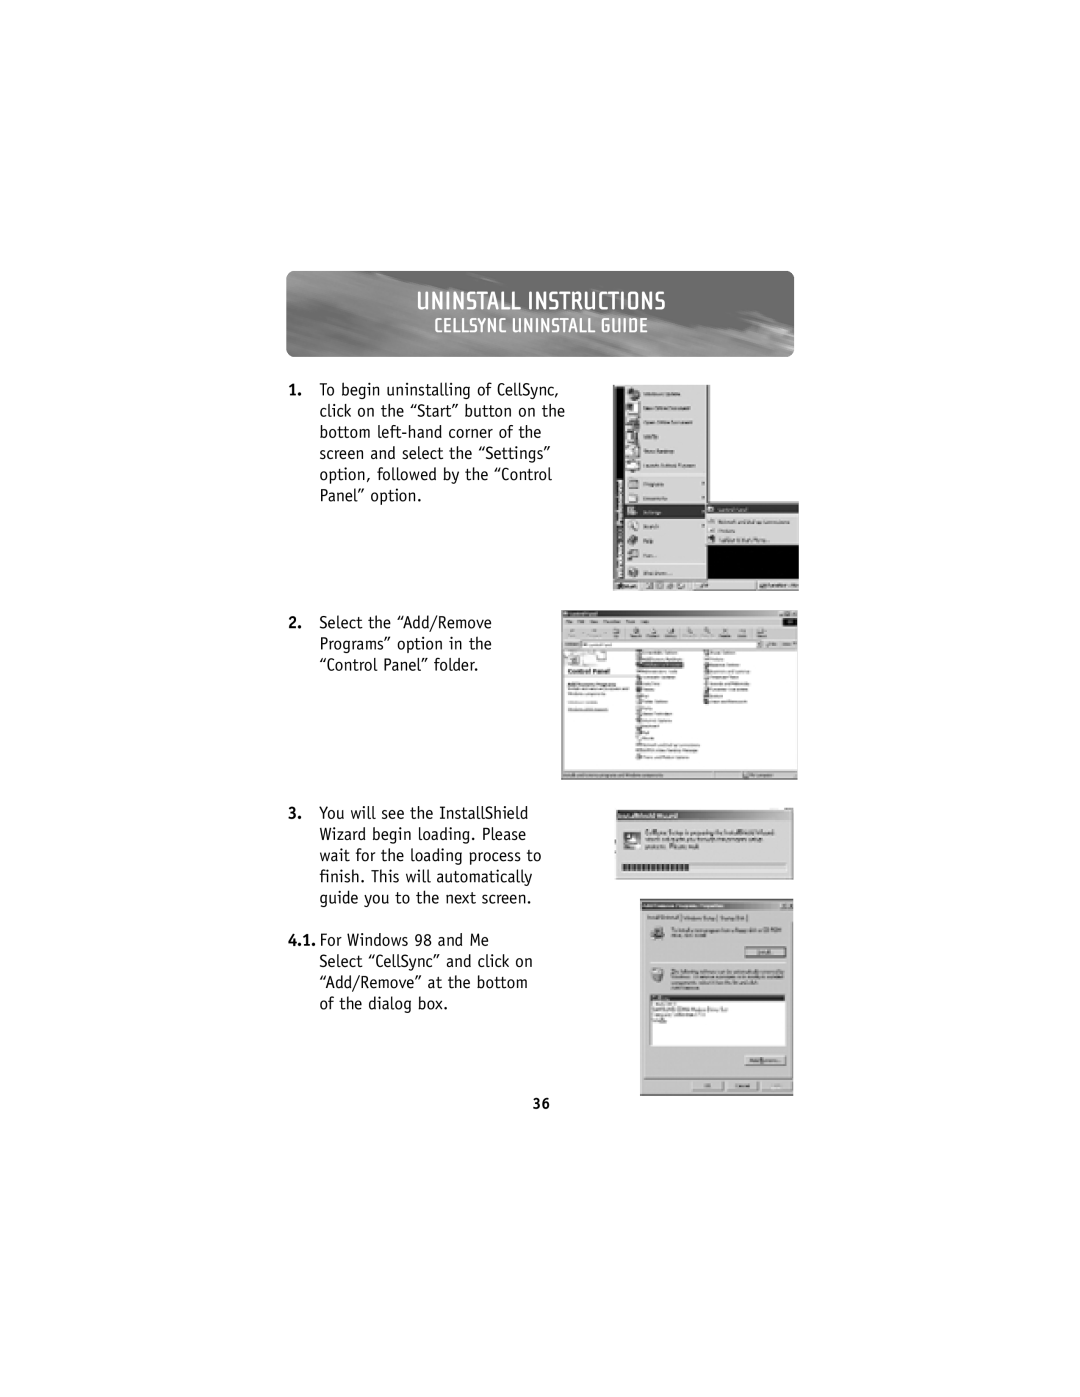 Belkin F8V7D006-SS, F8V7D008-SS user manual Cellsync Uninstall Guide, Uninstall Instructions 